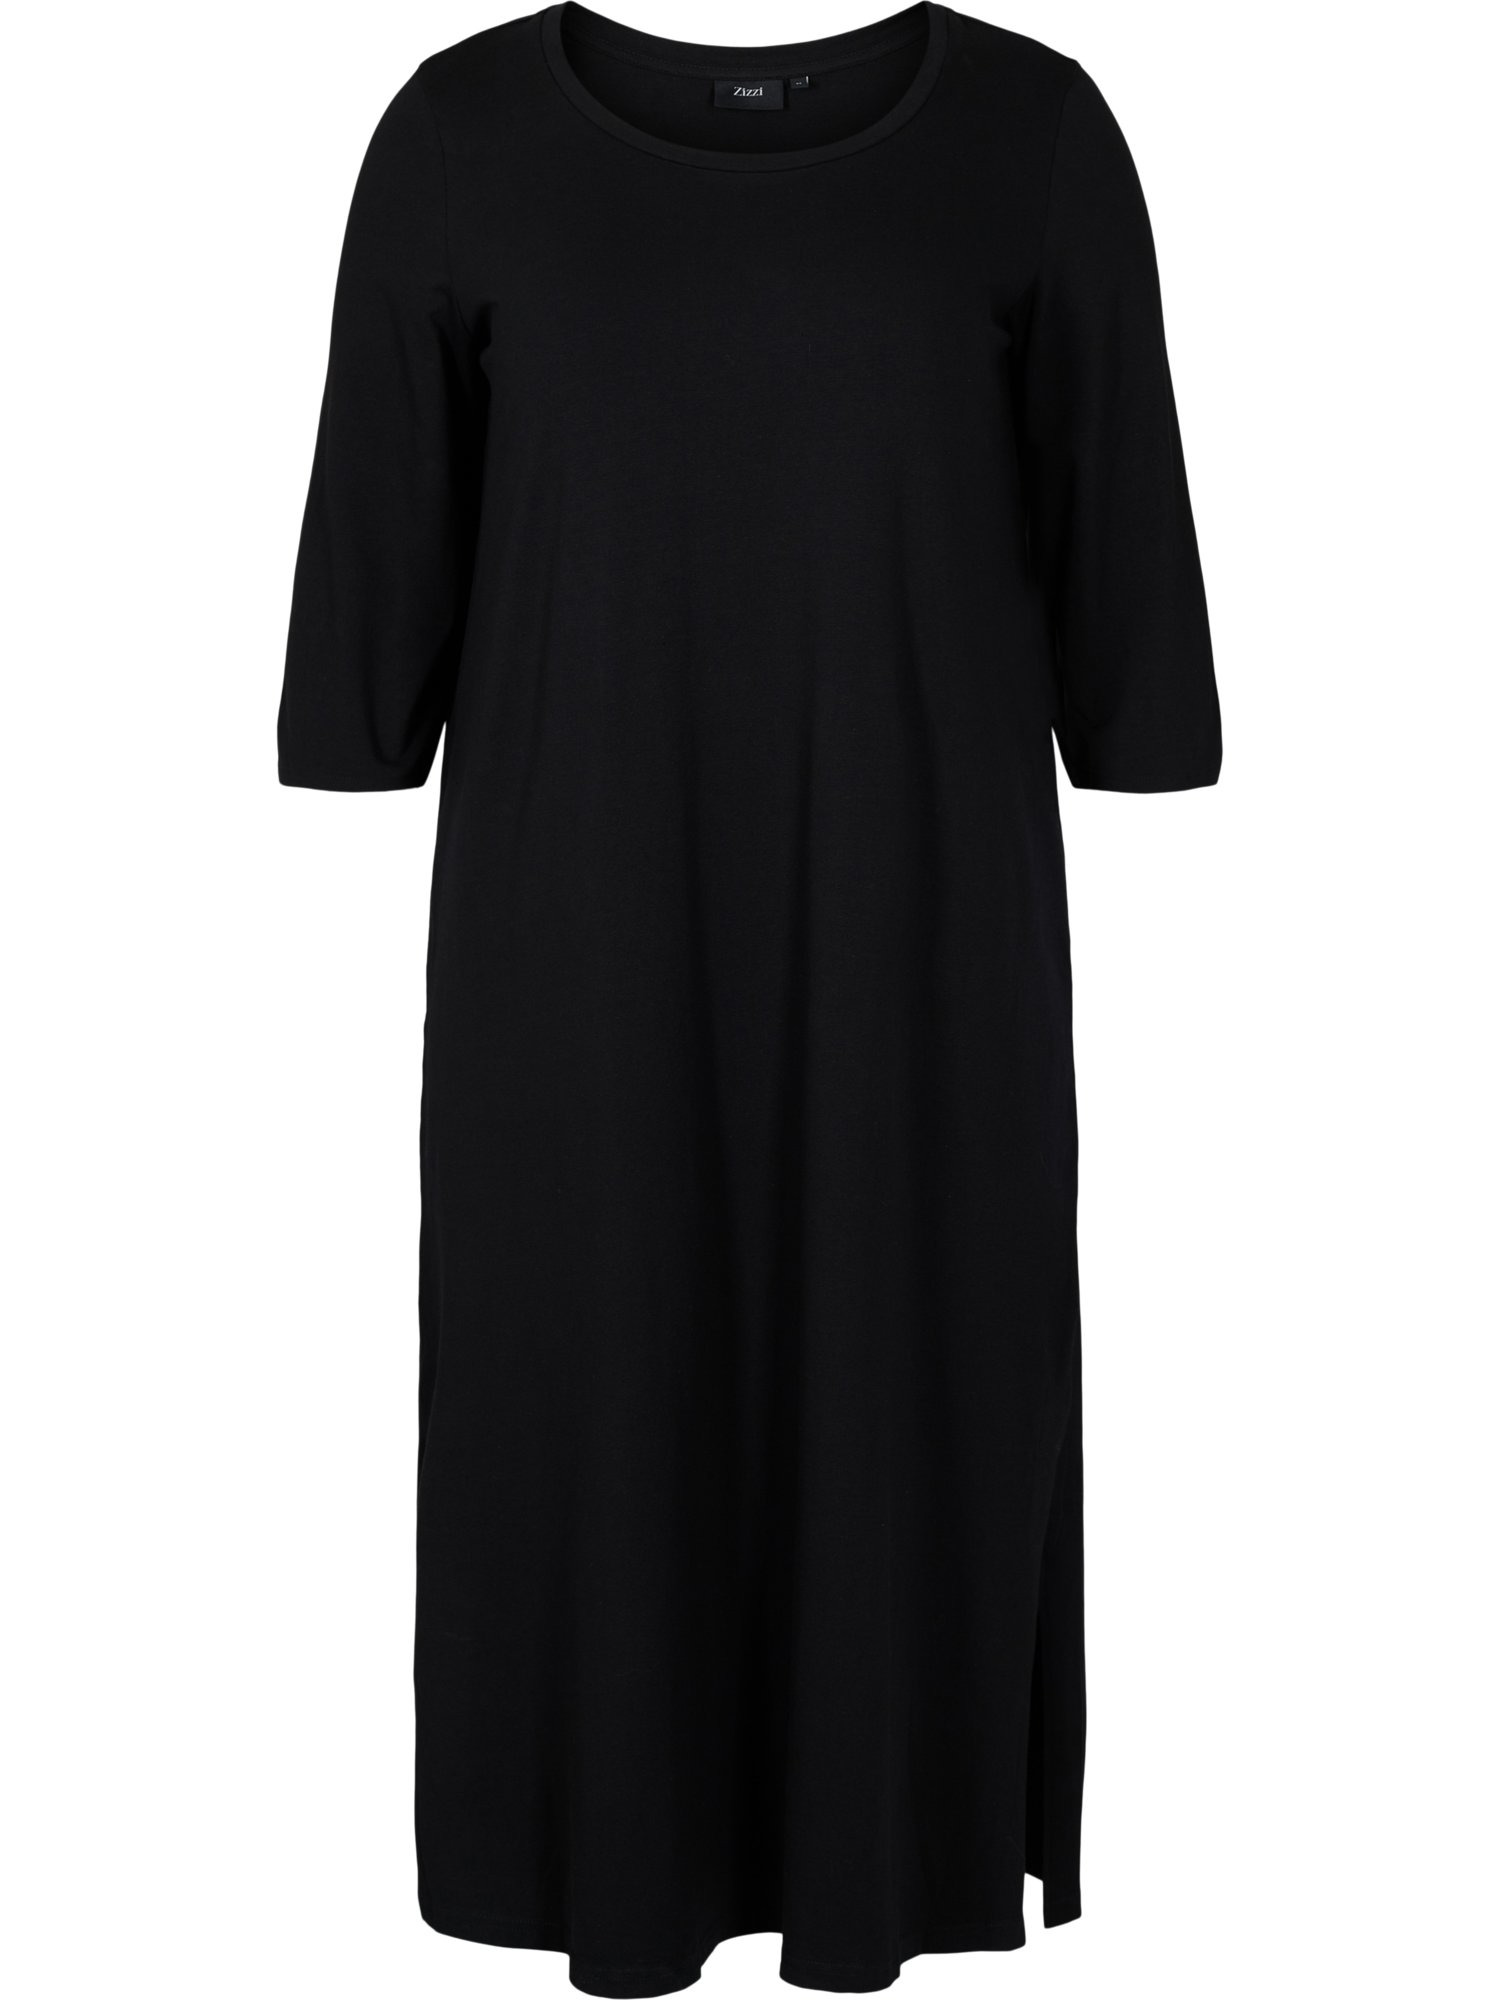 S8JCg Odzież Zizzi Sukienka VDORIT w kolorze Czarnym 